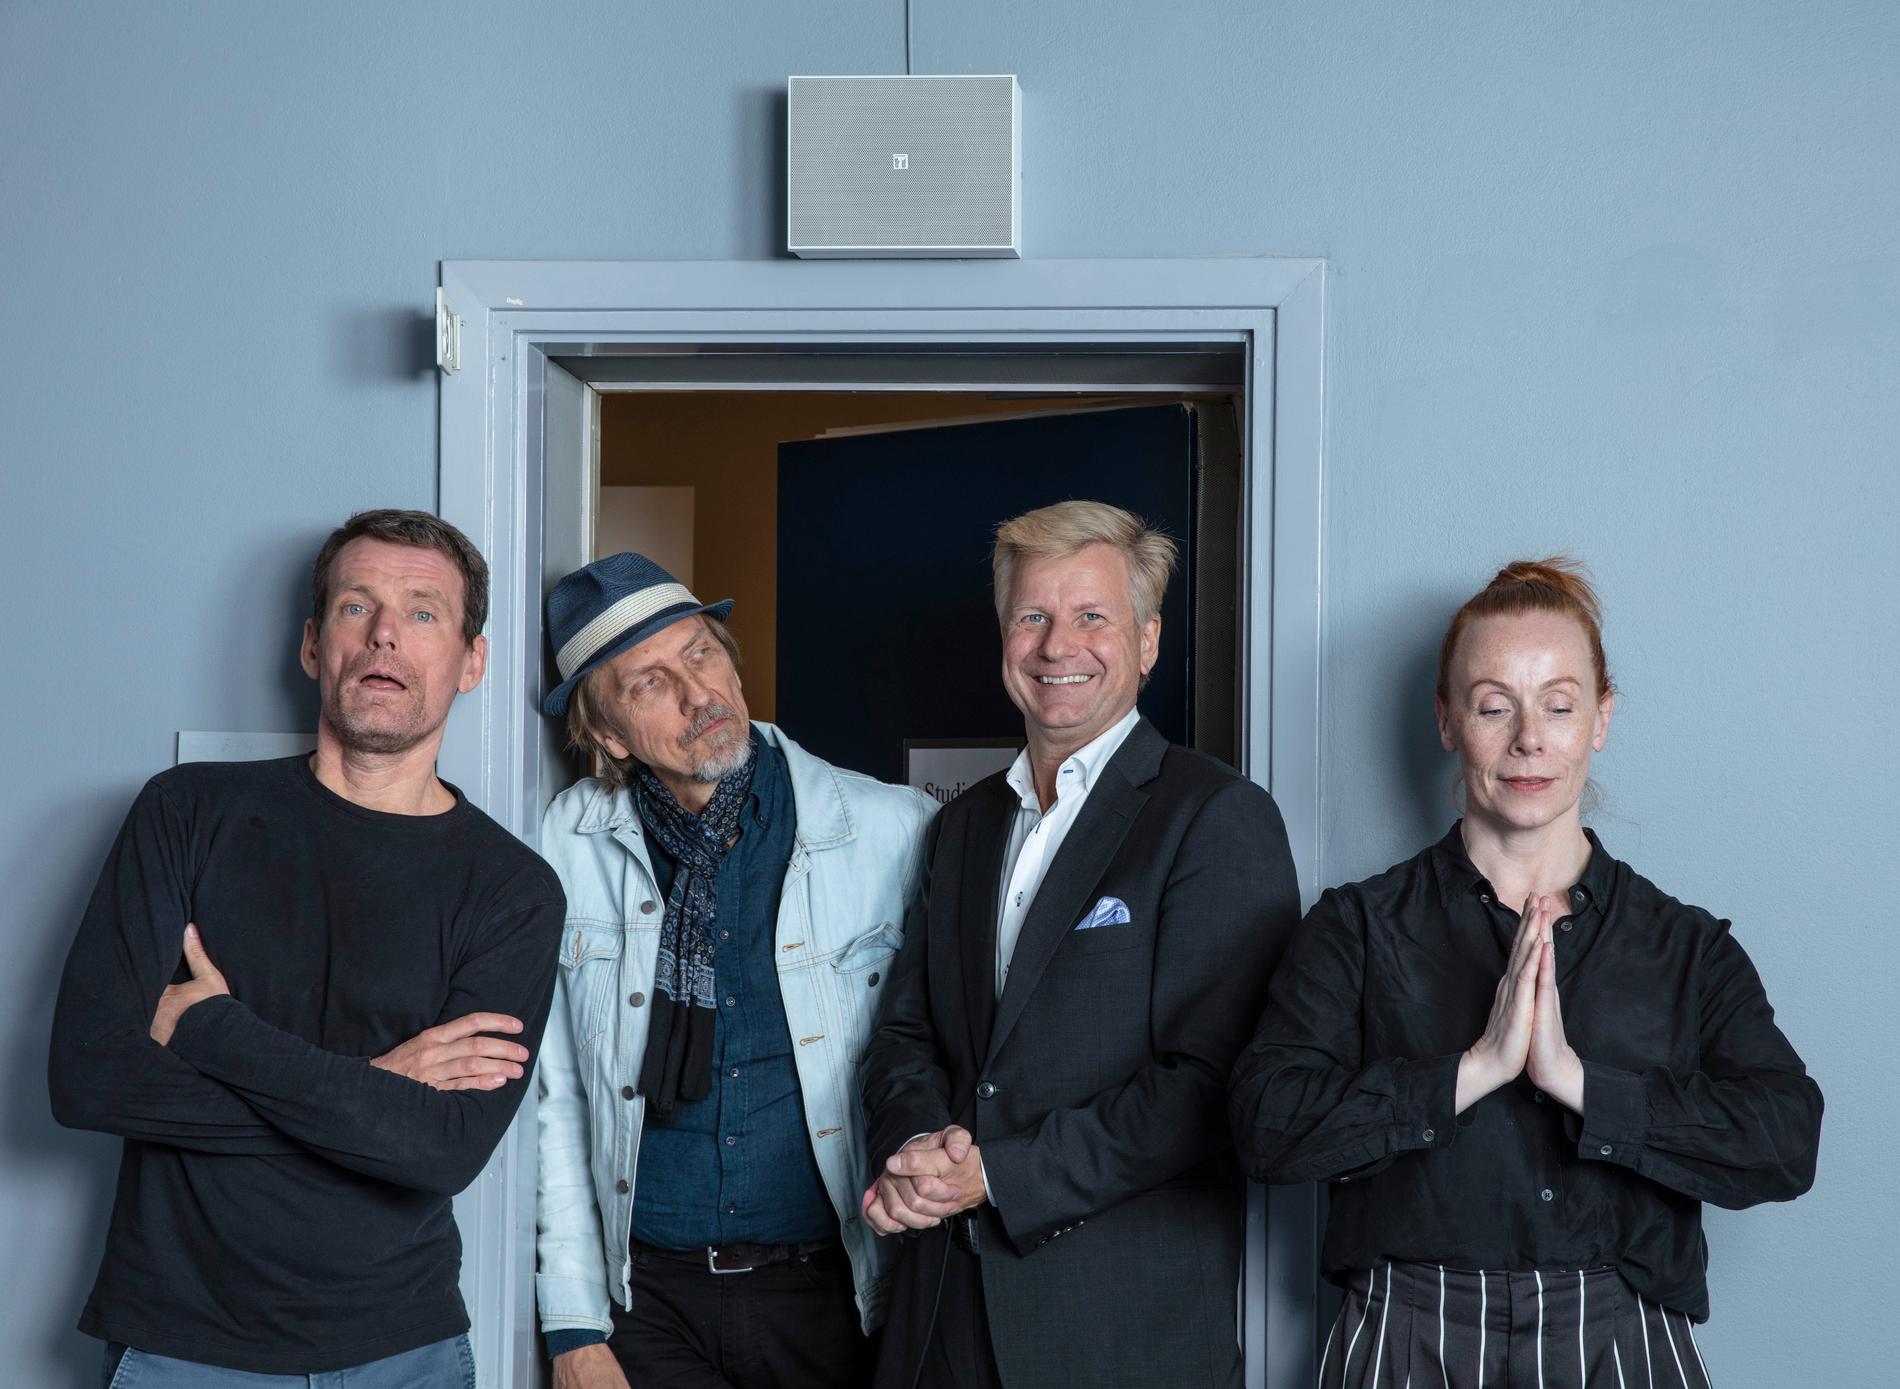 Mattias Konnebäck, Erik Blix, Göran Gabrielsson och Rachel Mohlin i "Public service". Nu försvinner de ur etern. Pressbild.